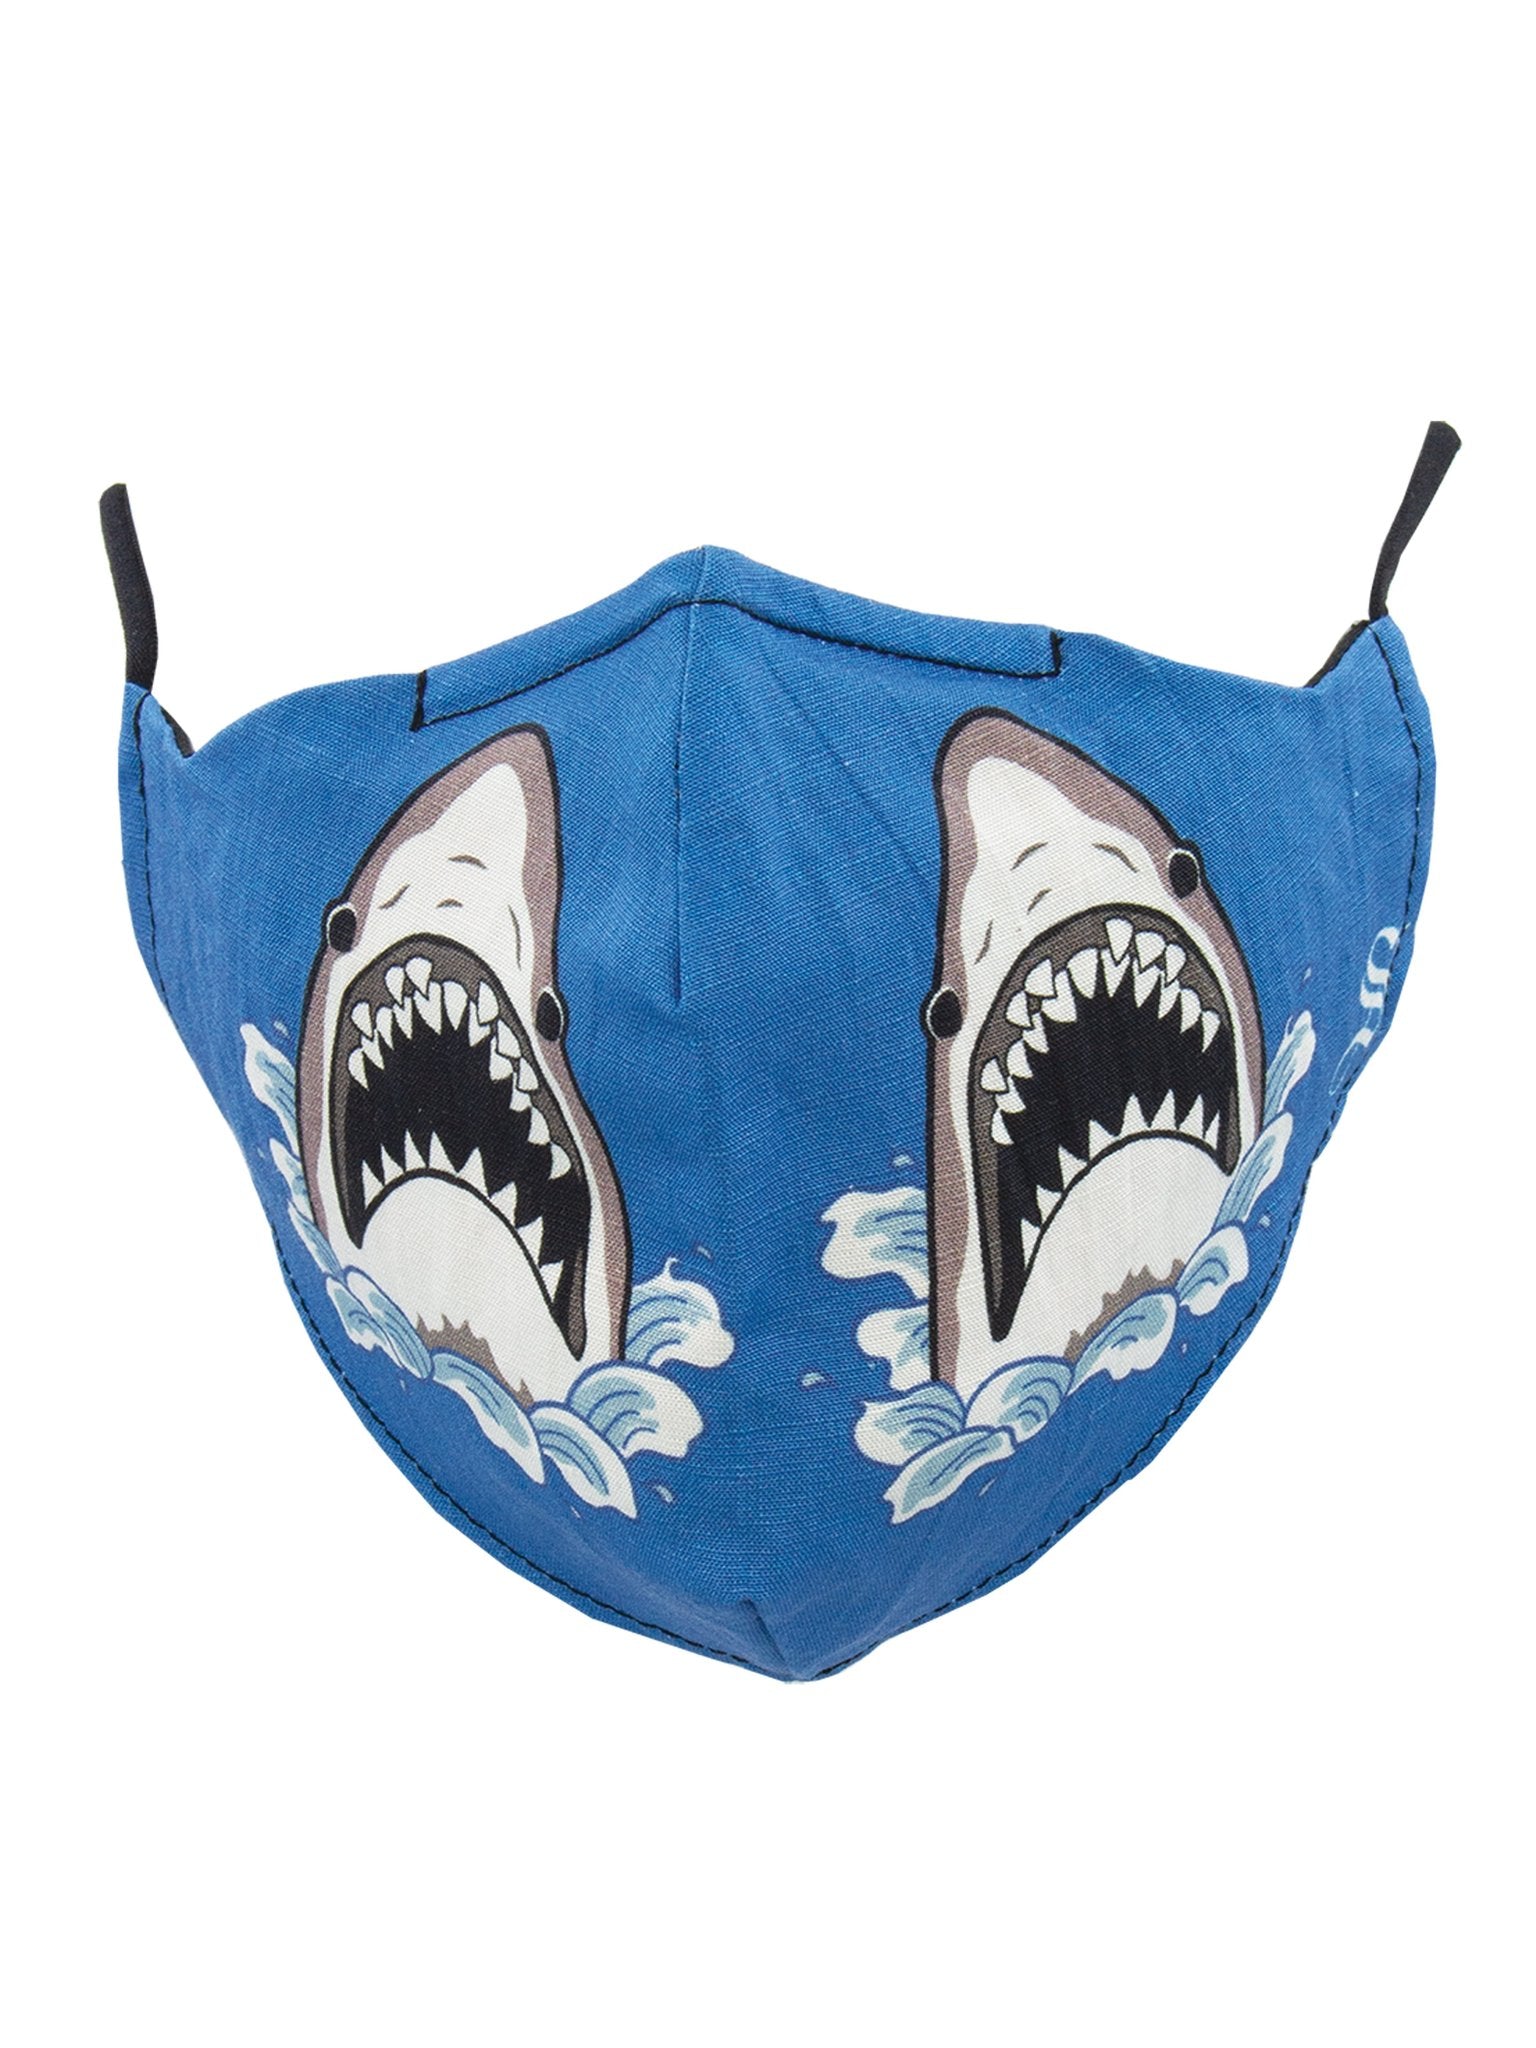 Face Masks Shark Attack